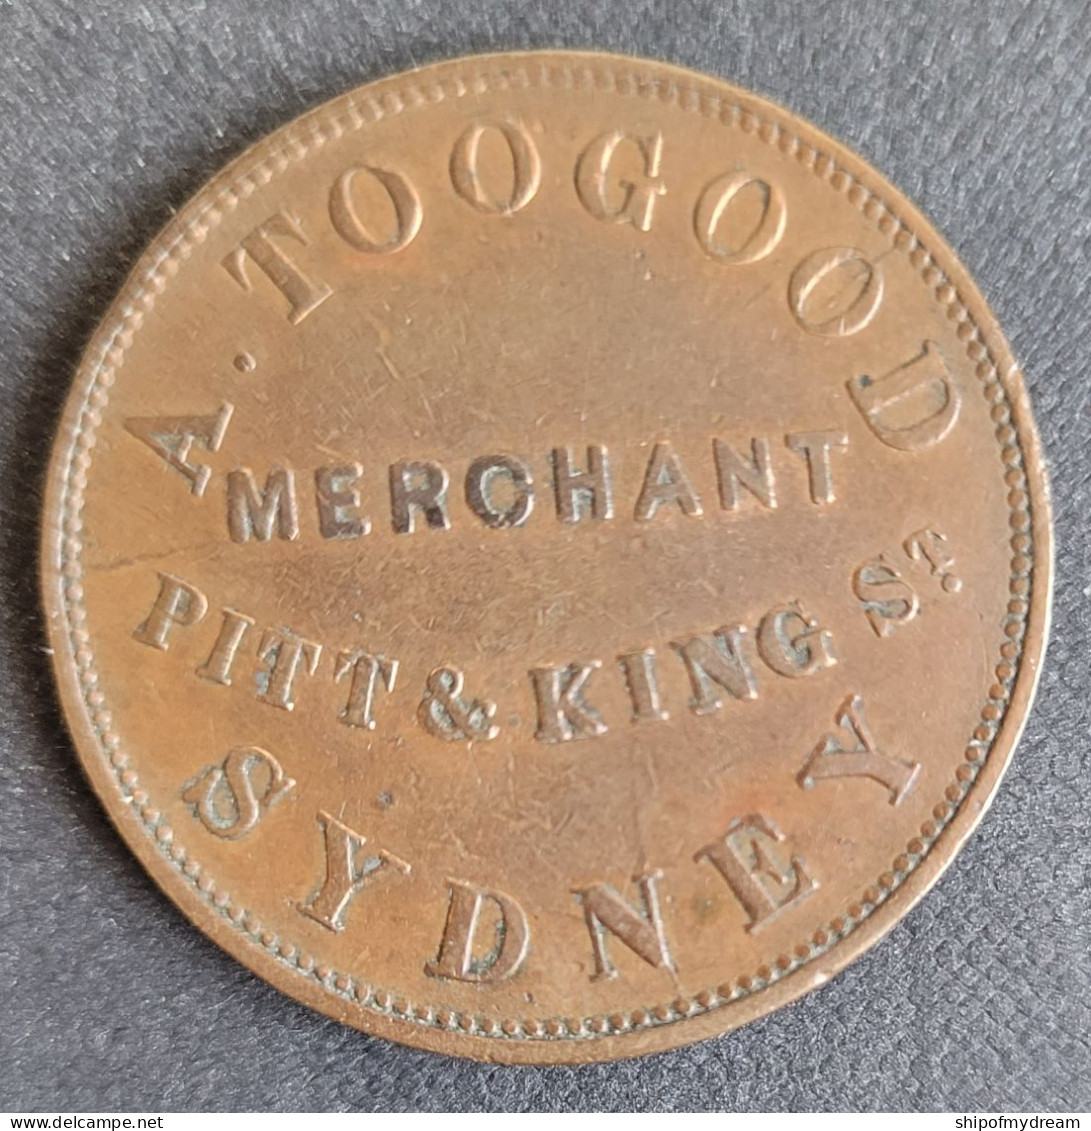 Australia Penny 1855 Tn256, A. Toogood Pitt & King St Merchant Sydney. High CV. - Wertmarken (Kriegsgefangenen)